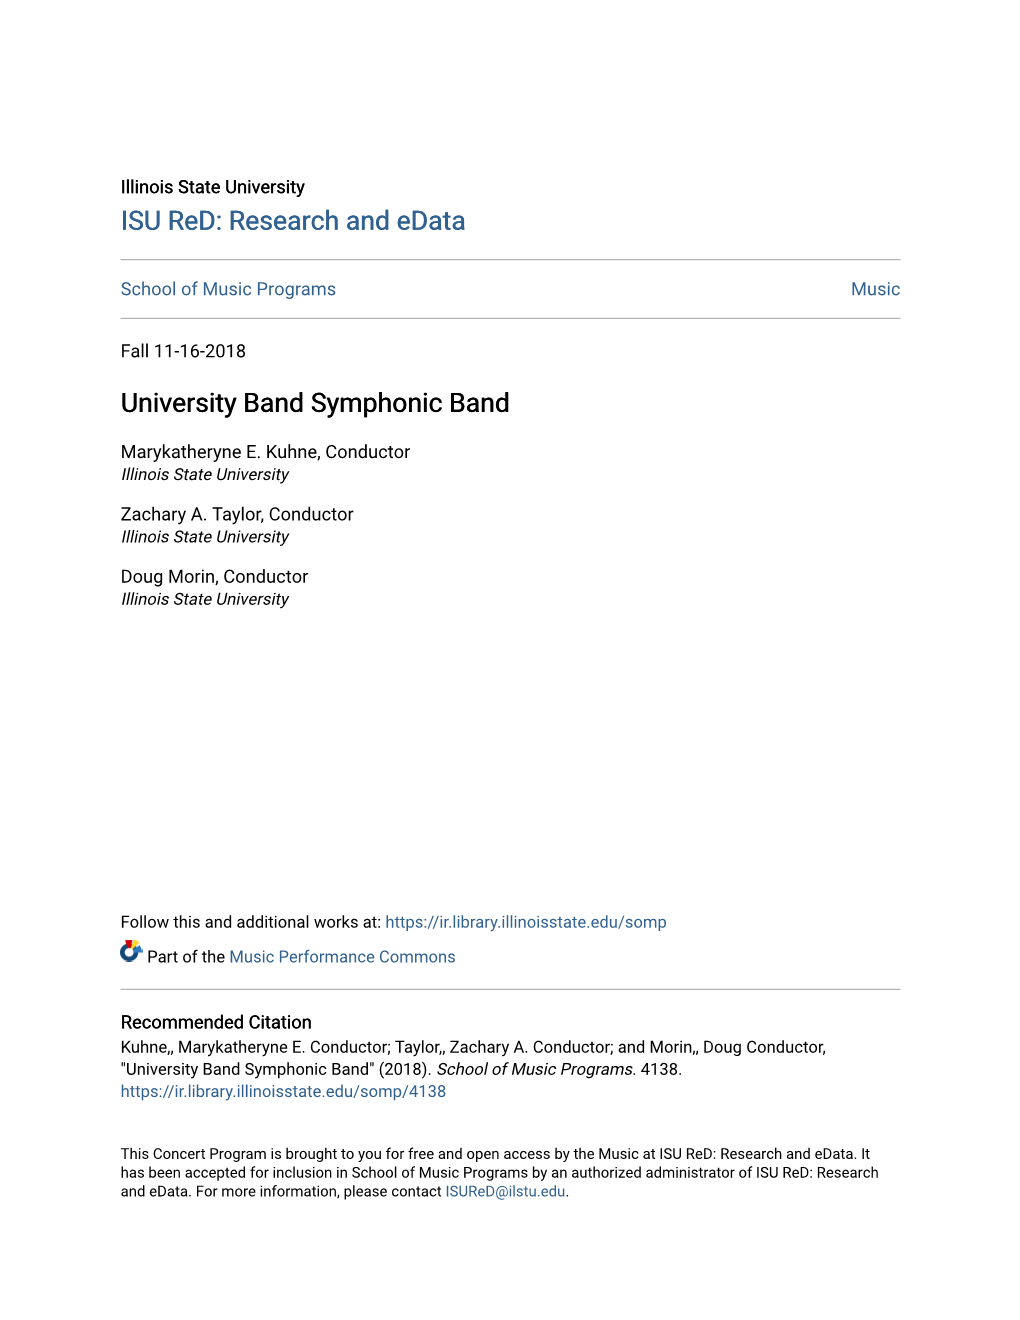 University Band Symphonic Band